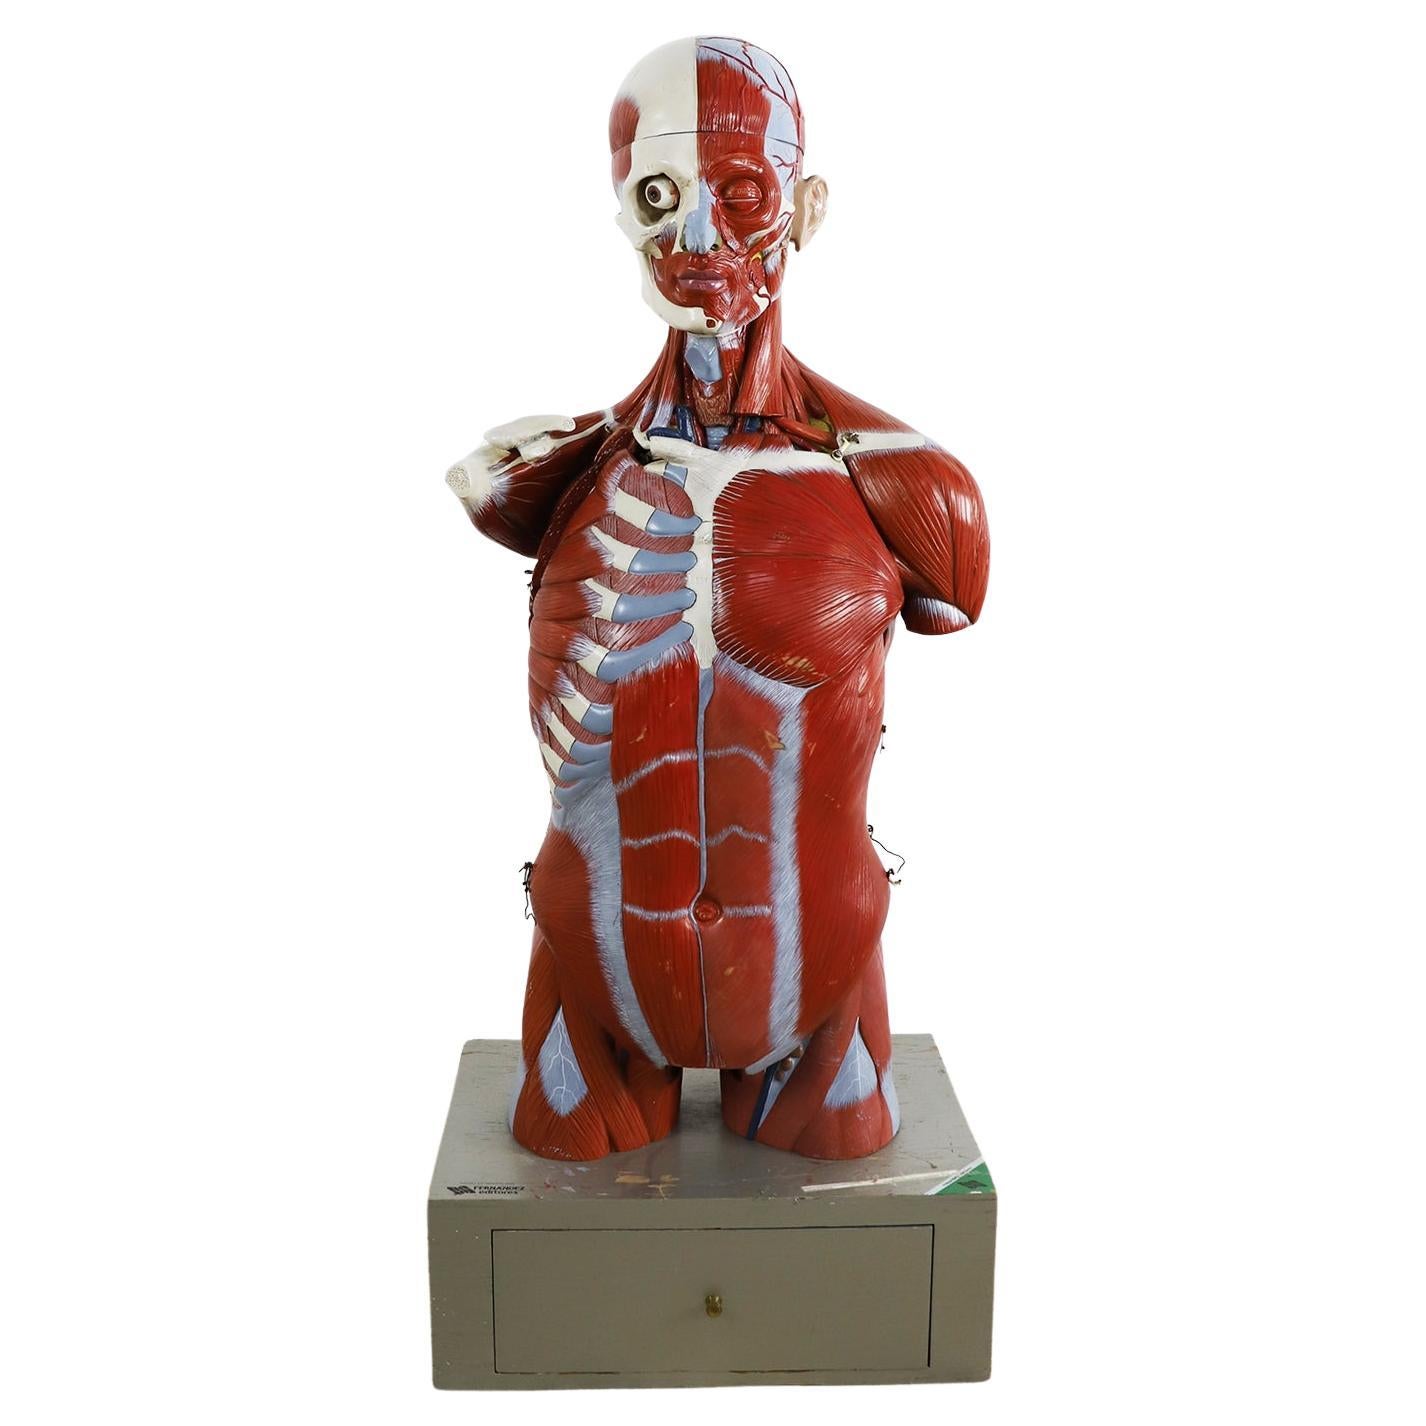 Anatomical Medical Teaching Display, circa 1960